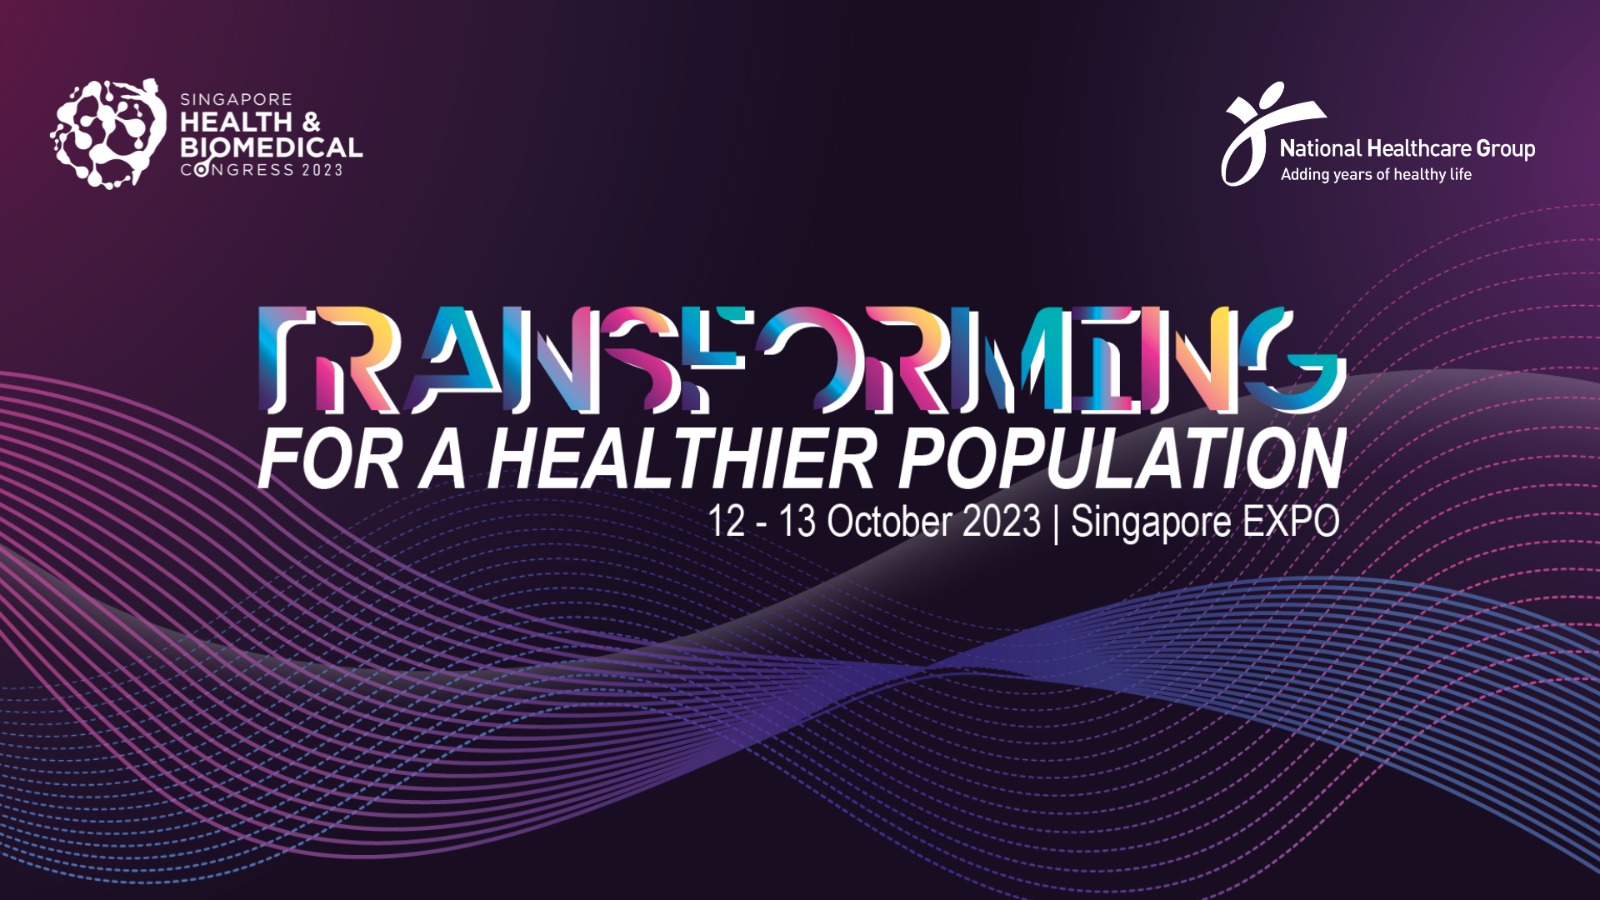 Singapore Health & Biomedical Congress 2023, Singapore